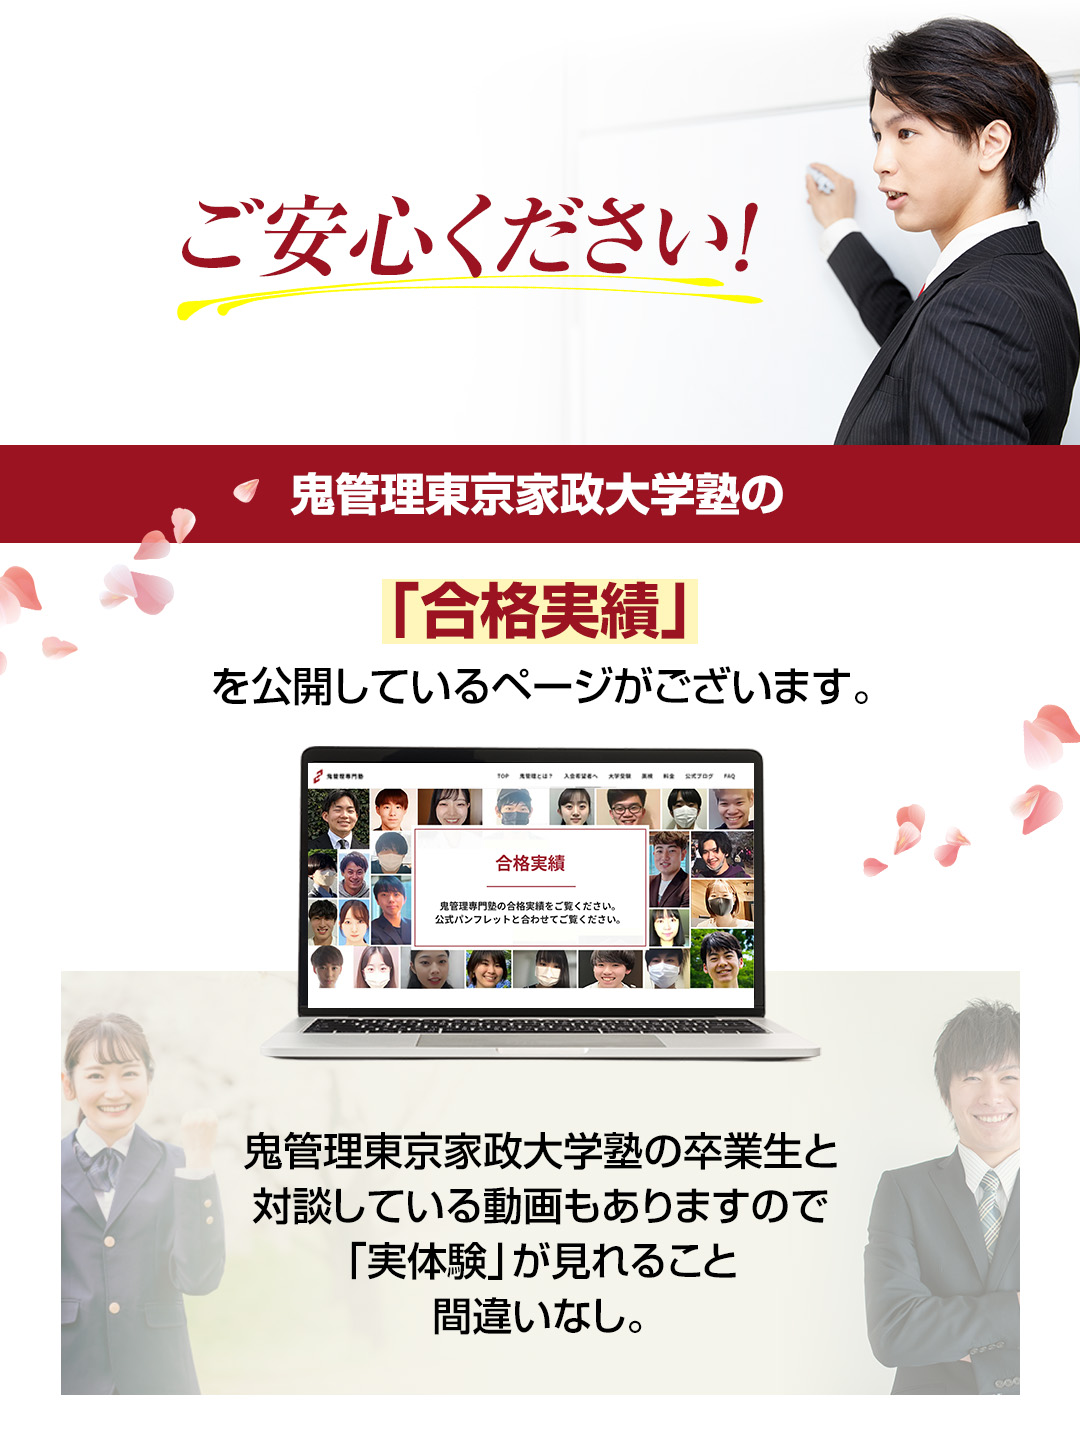 鬼管理東京家政大学塾の「合格実績」を公開しているページがございます